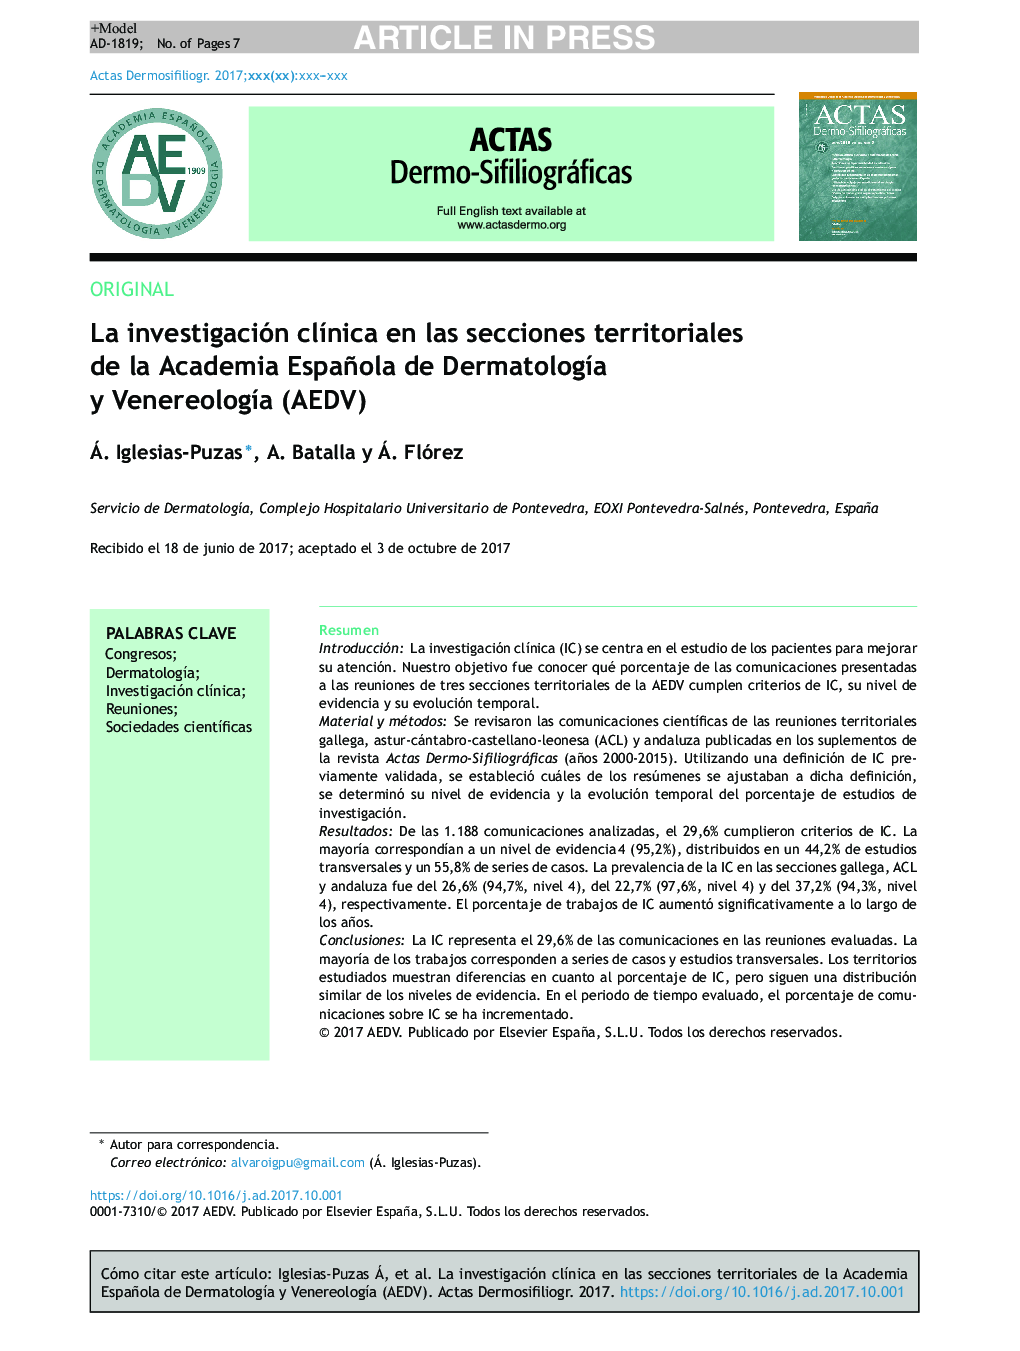 La investigación clÃ­nica en las secciones territoriales de la Academia Española de DermatologÃ­a y VenereologÃ­a (AEDV)